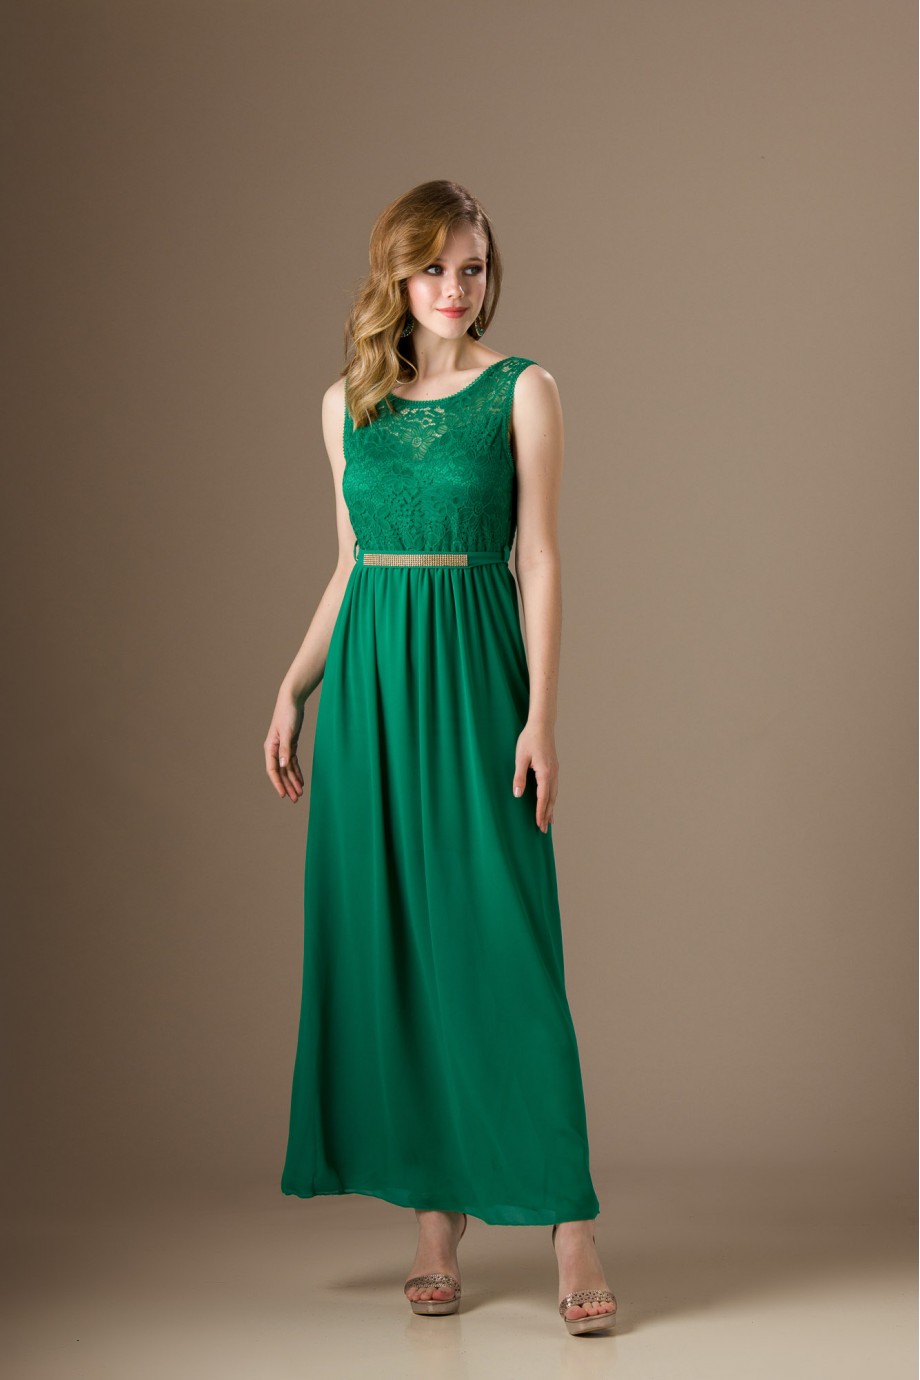 Μακρύ πράσινο φόρεμα με δαντέλα 